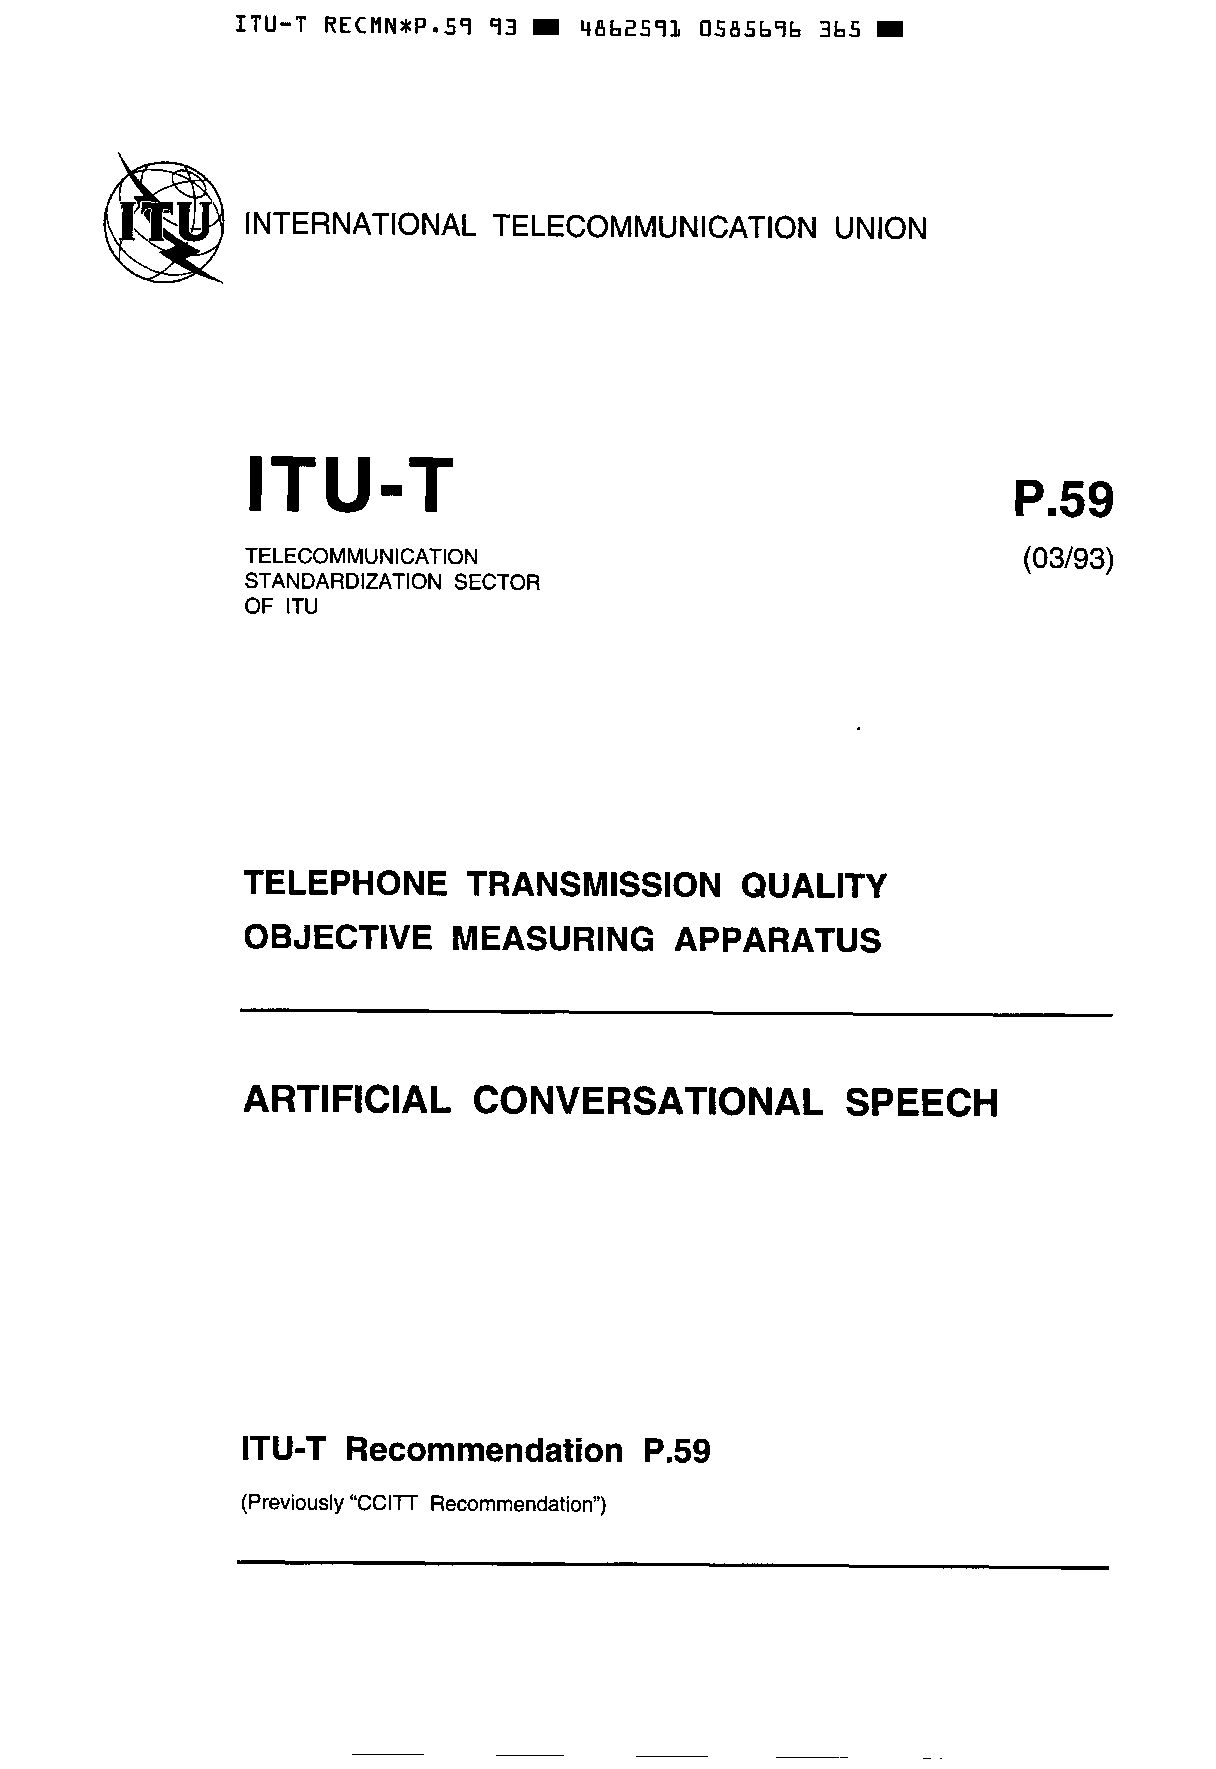 ITU-T P.59-1993